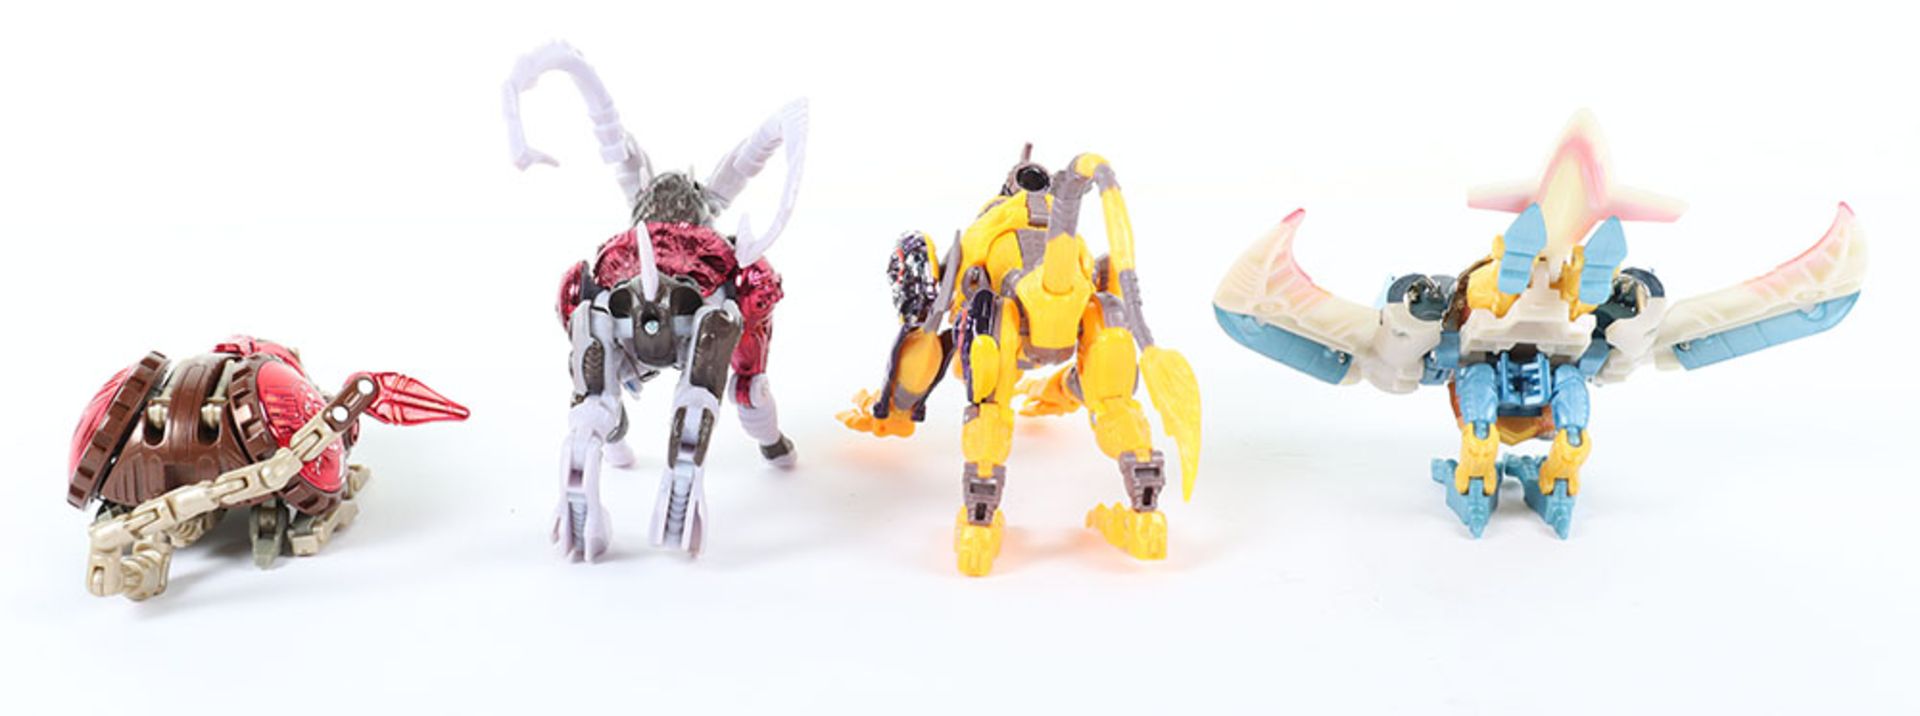 Hasbro Transformers Beast Wars Deluxe class figures - Image 2 of 3